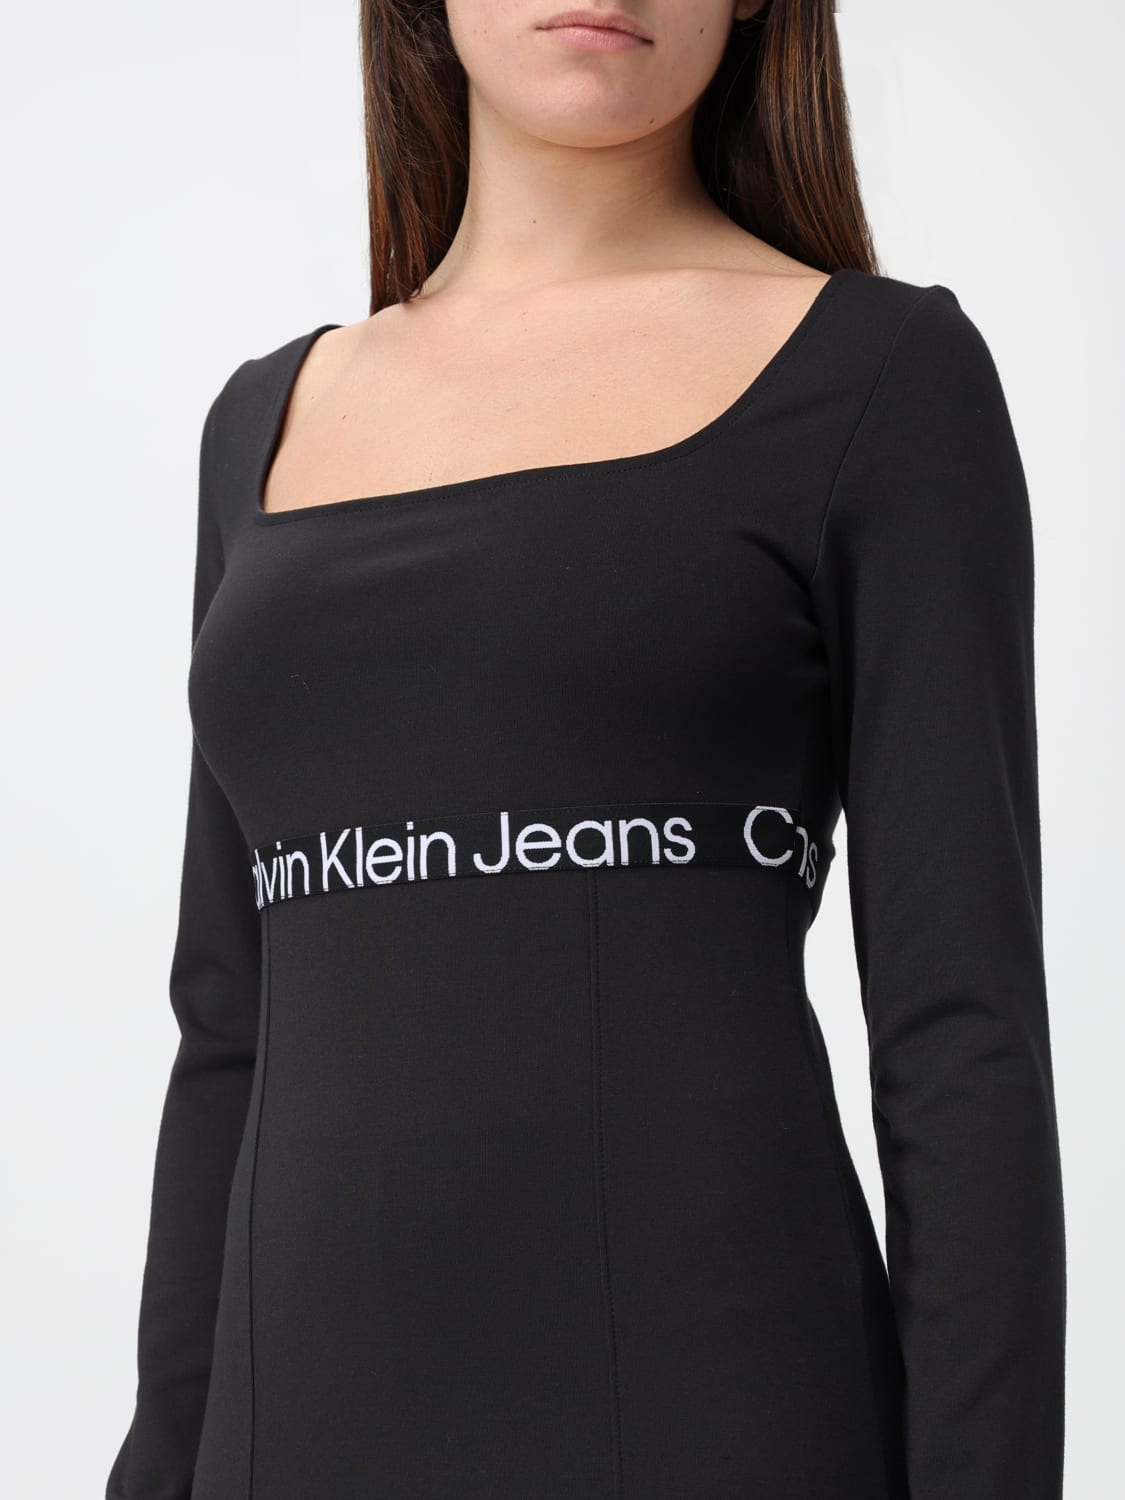 Calvin Klein Jeans Woman's Dress